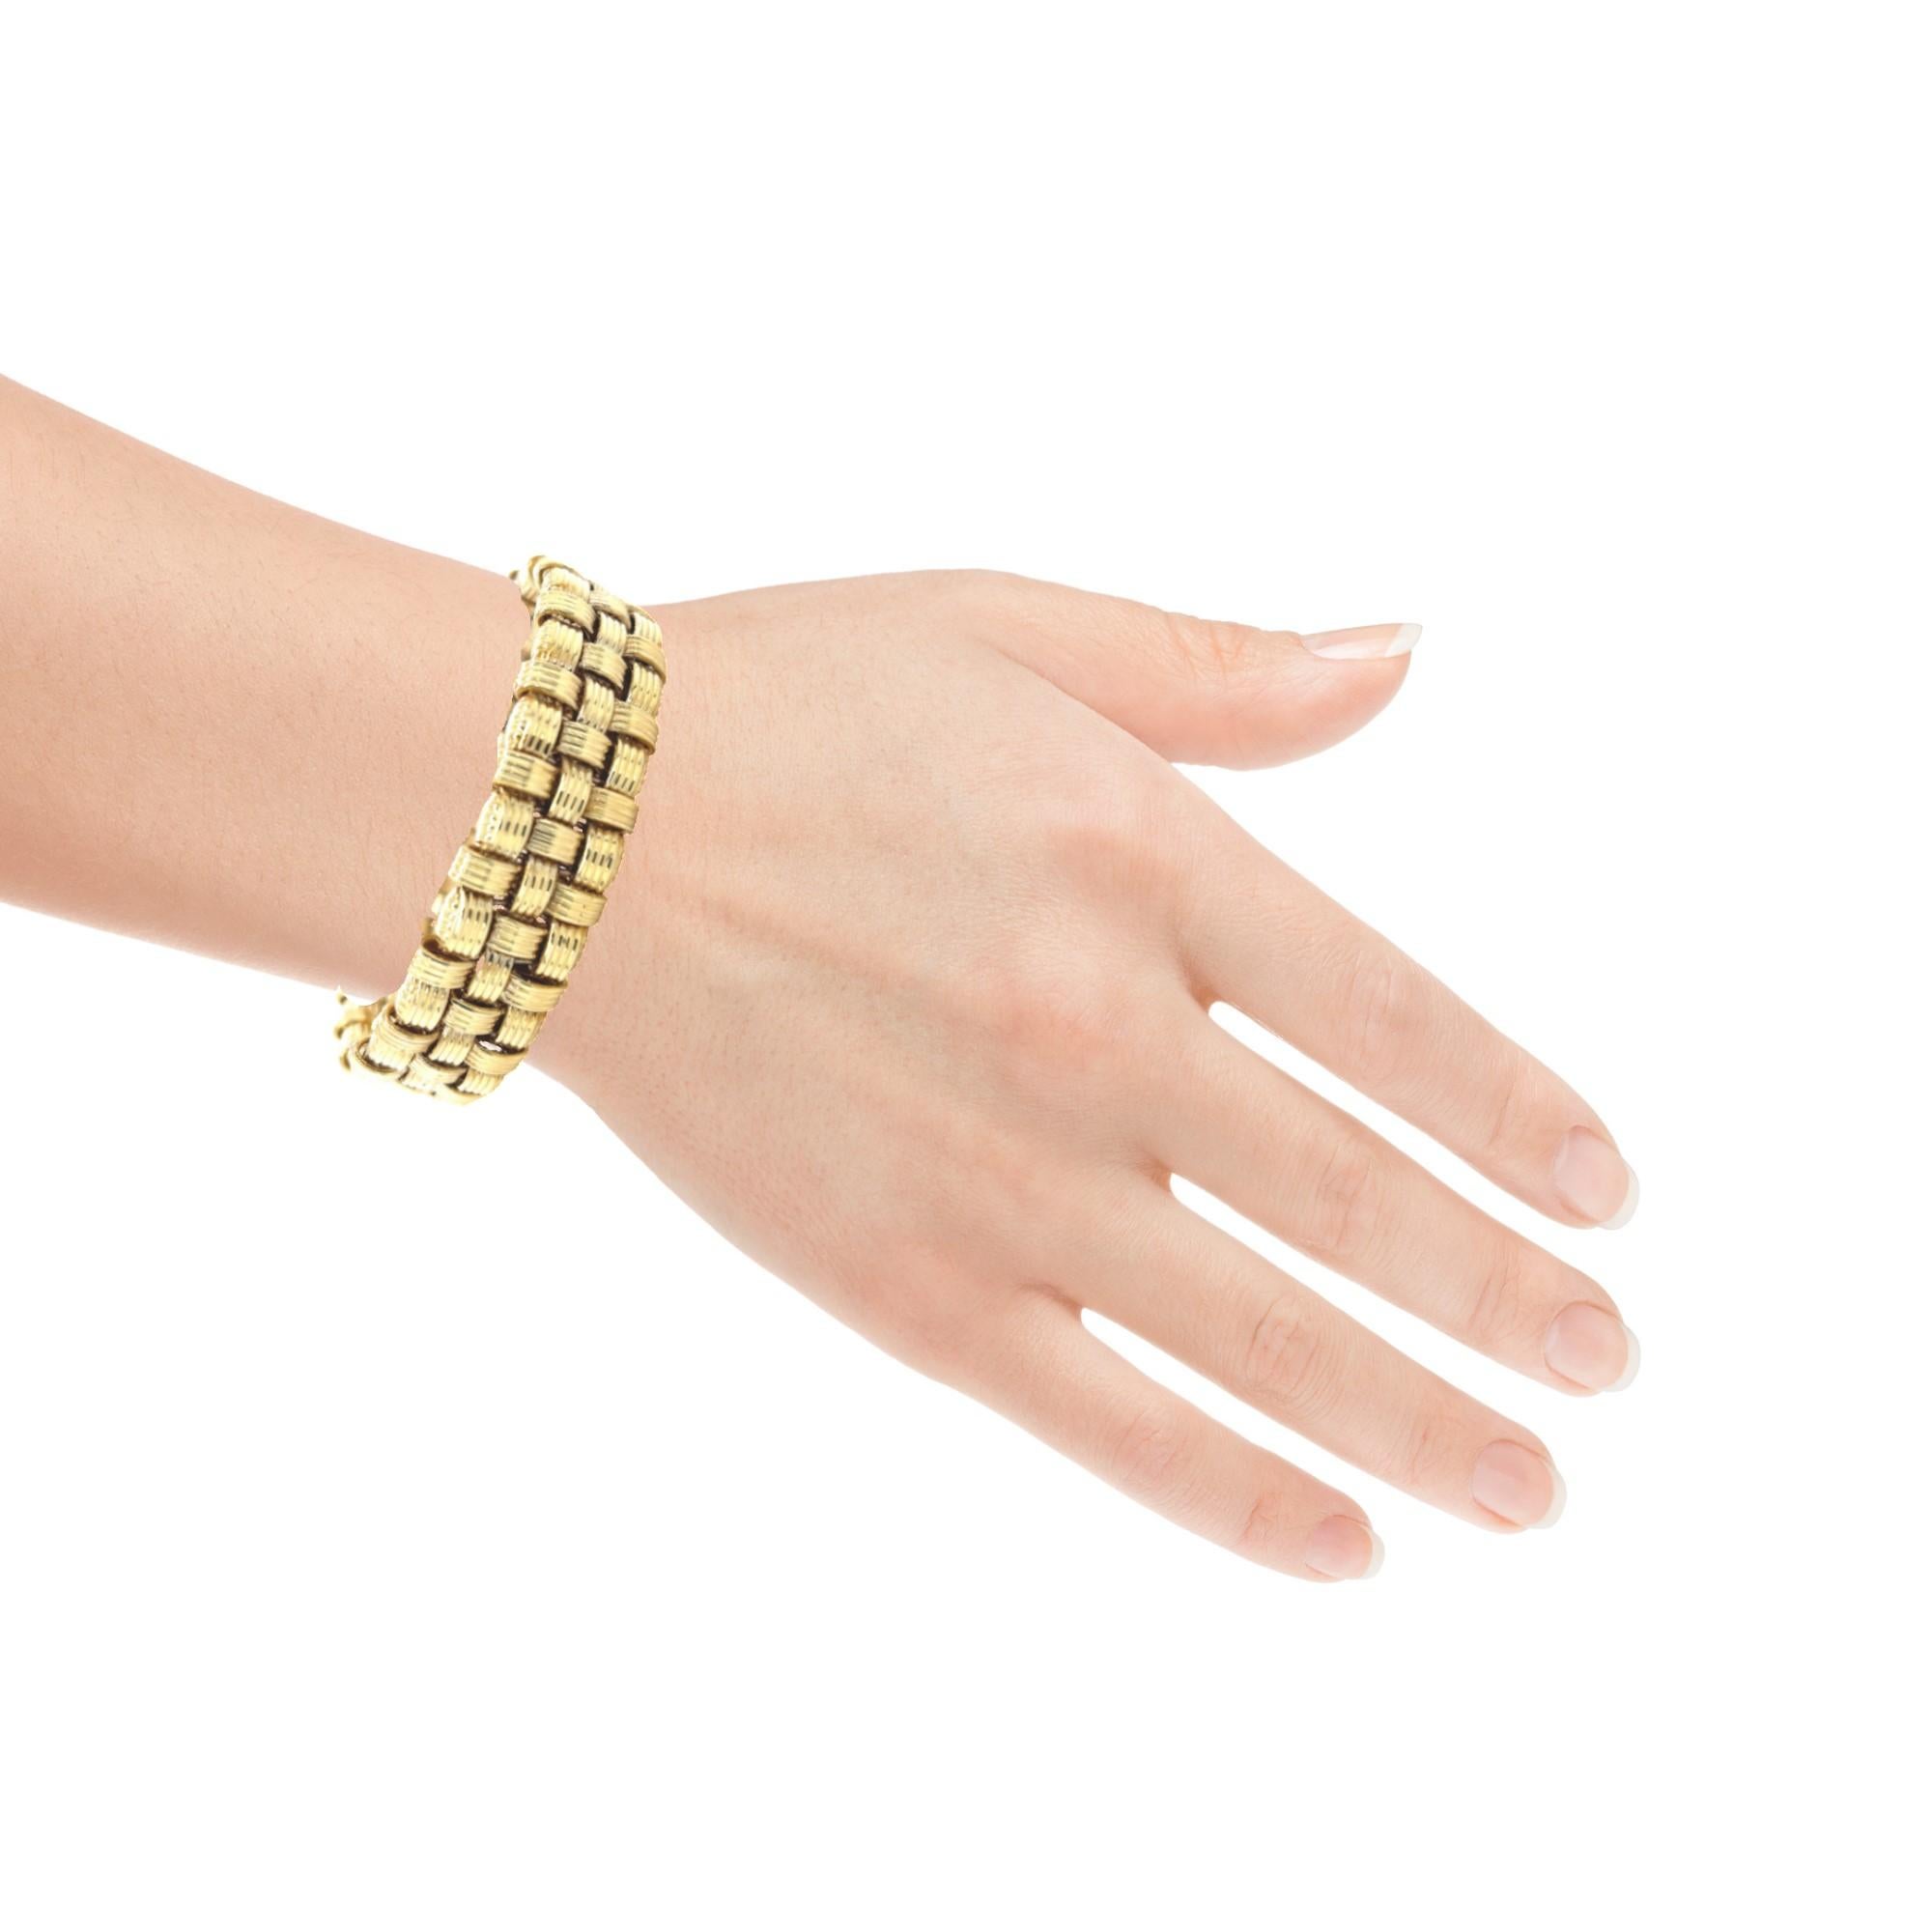  Italian Basketweave Bracelet in 14k Yellow Gold For Sale 3